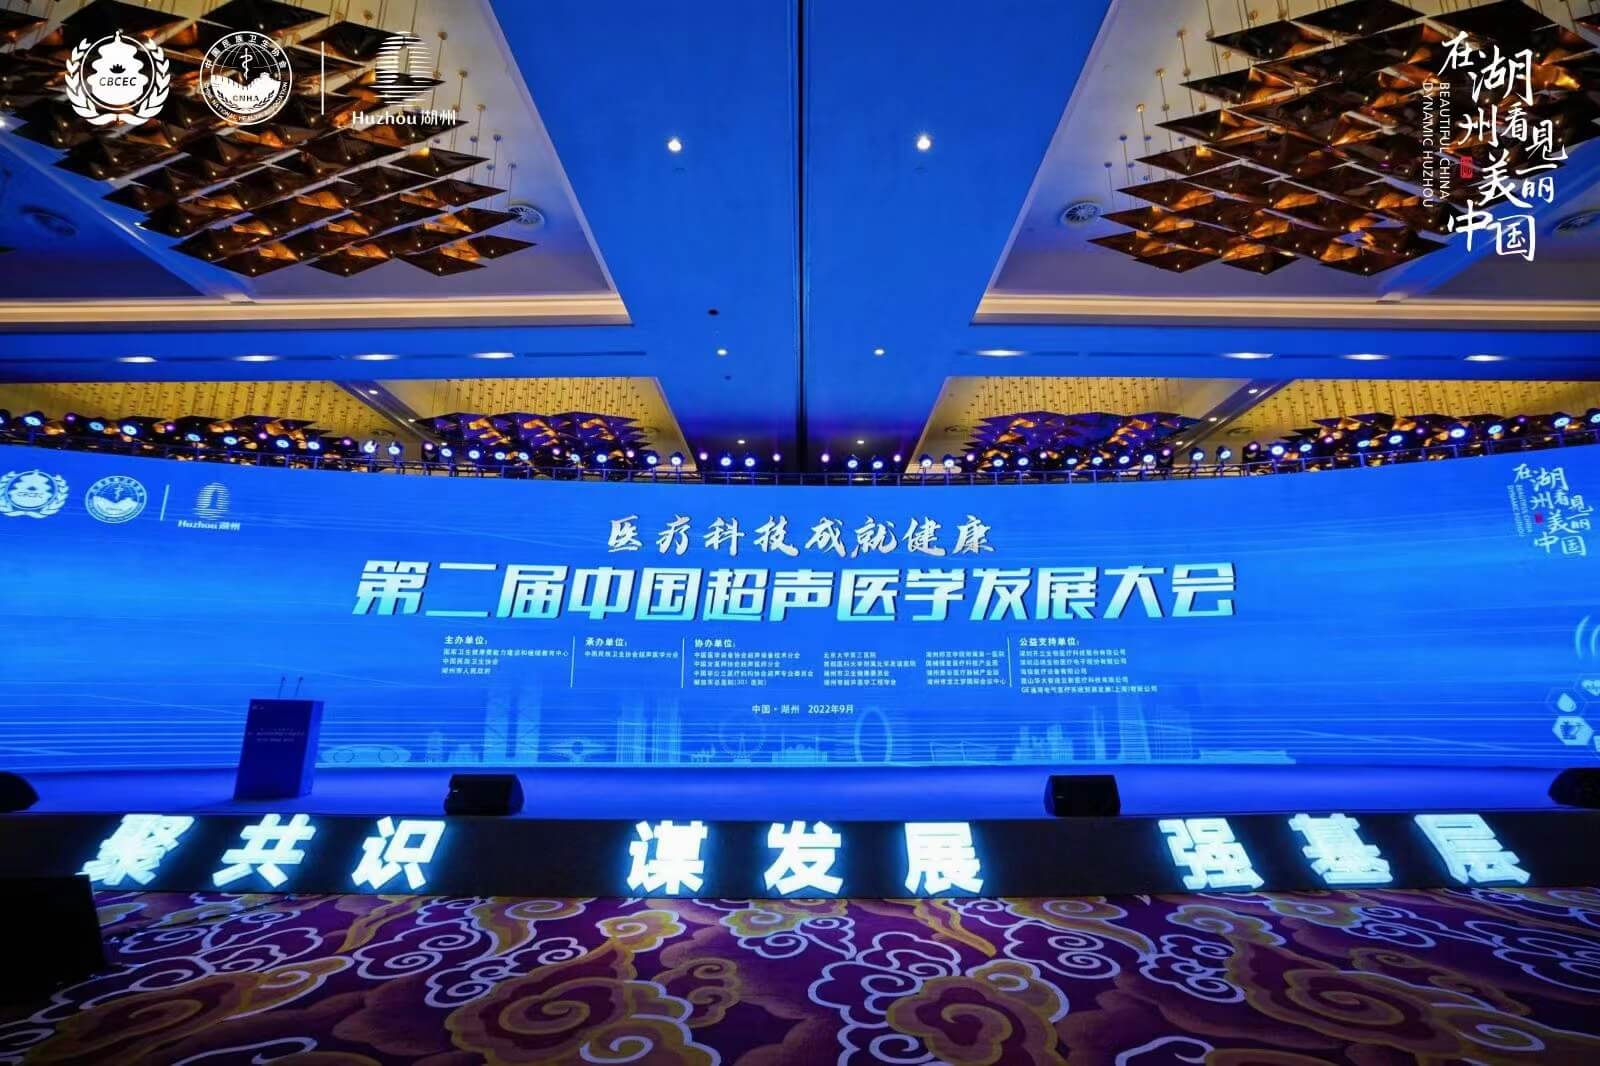  سونوستار سونوستار ، واحدة من مقدمي مشروع القرار الرئيسيين في الصين بالموجات فوق الصوتية مؤتمر التنم